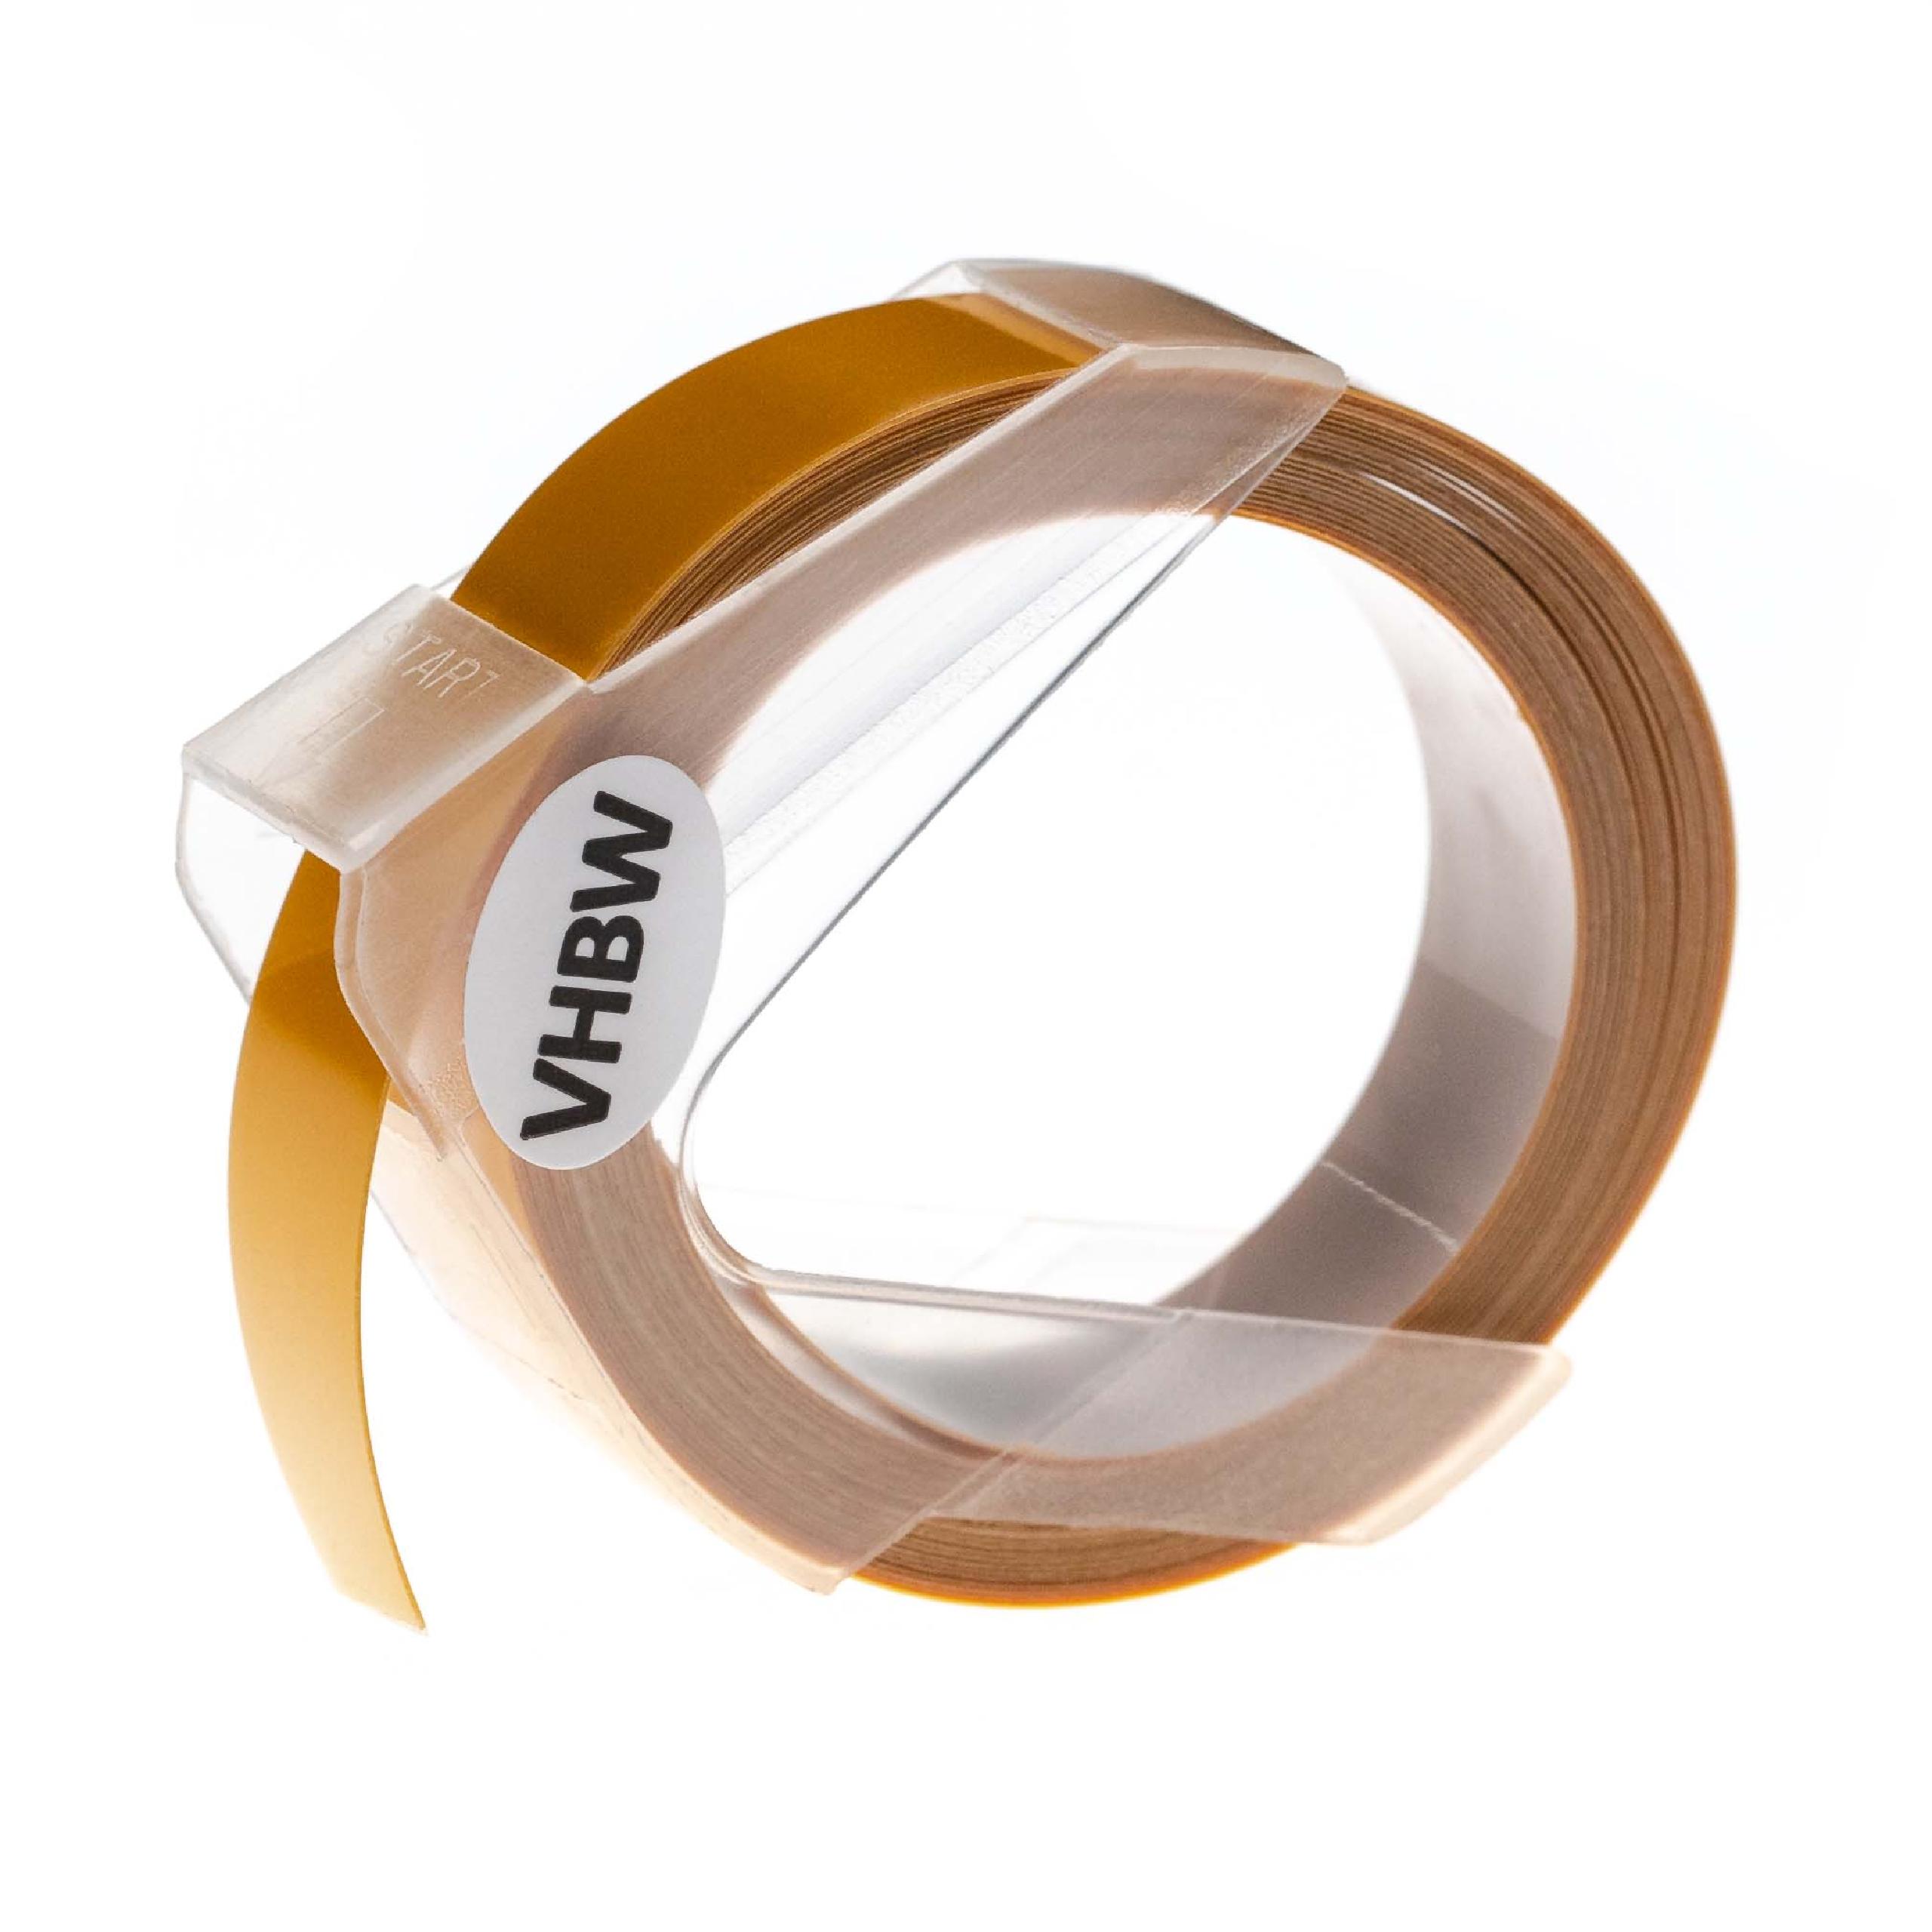 Casete cinta relieve 3D Casete cinta escritura reemplaza Dymo 0898172 Blanco su Amarillo oscuro